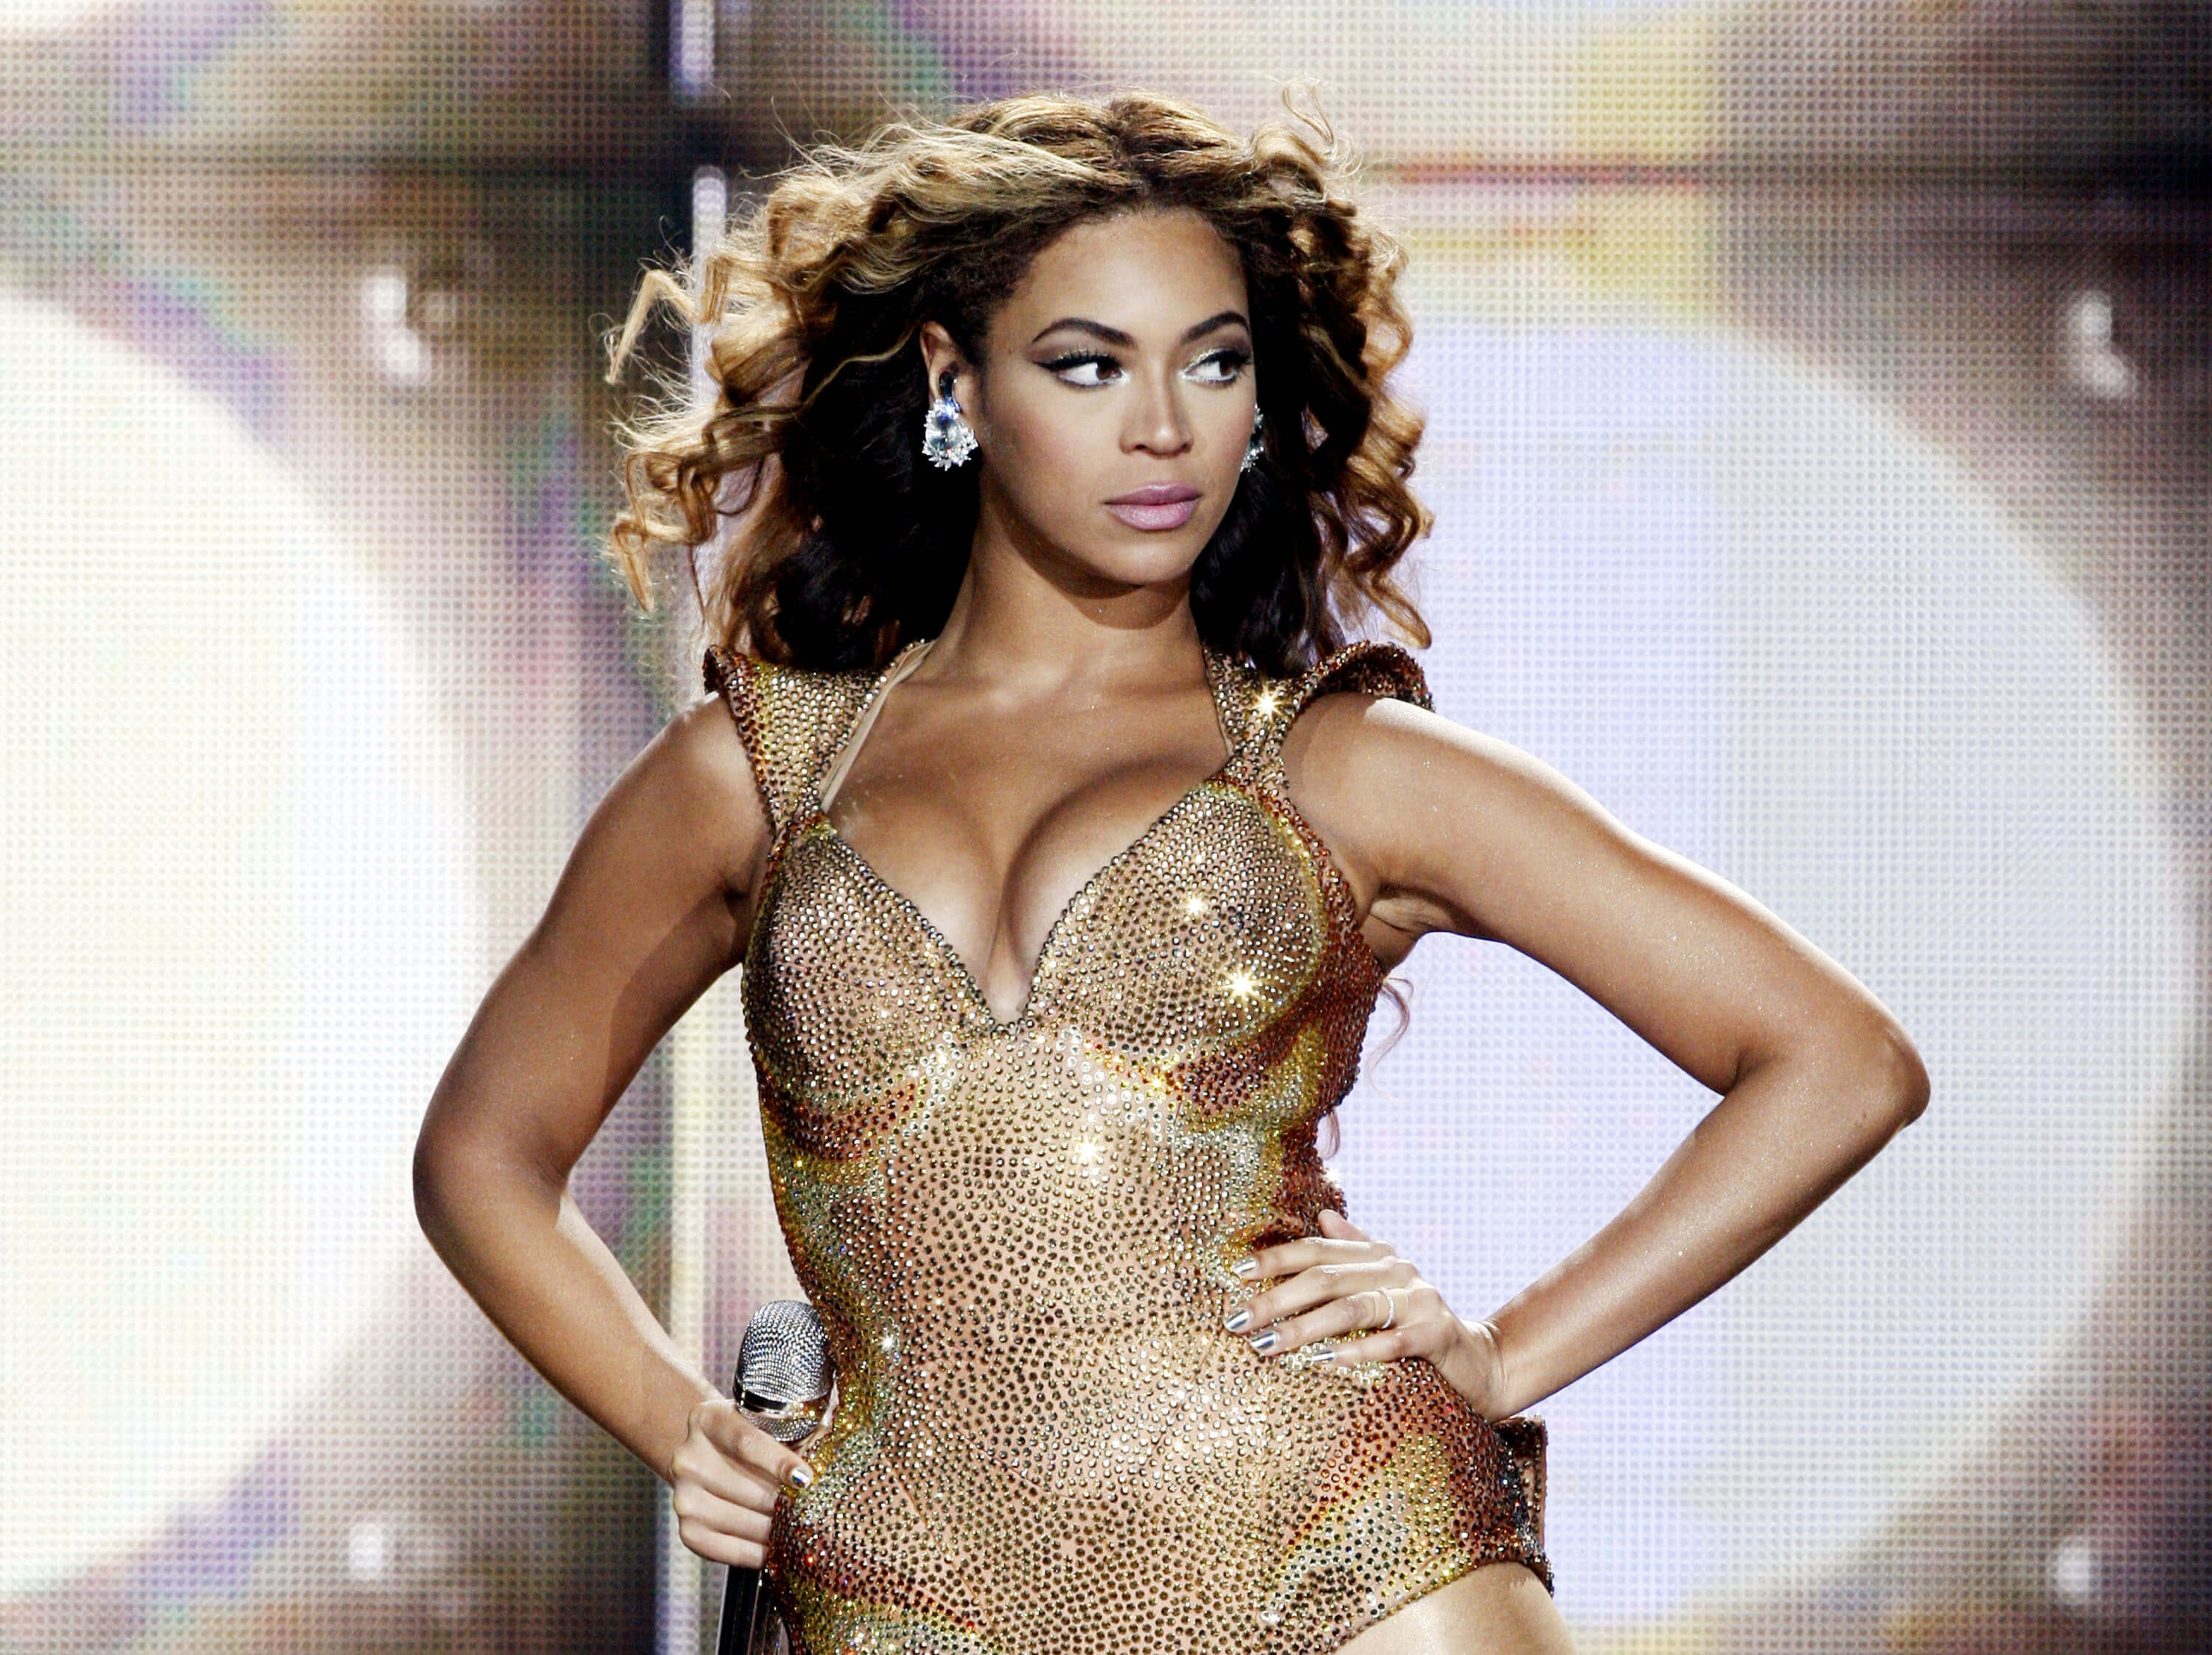 "Halo" singer Beyoncé wearing gold